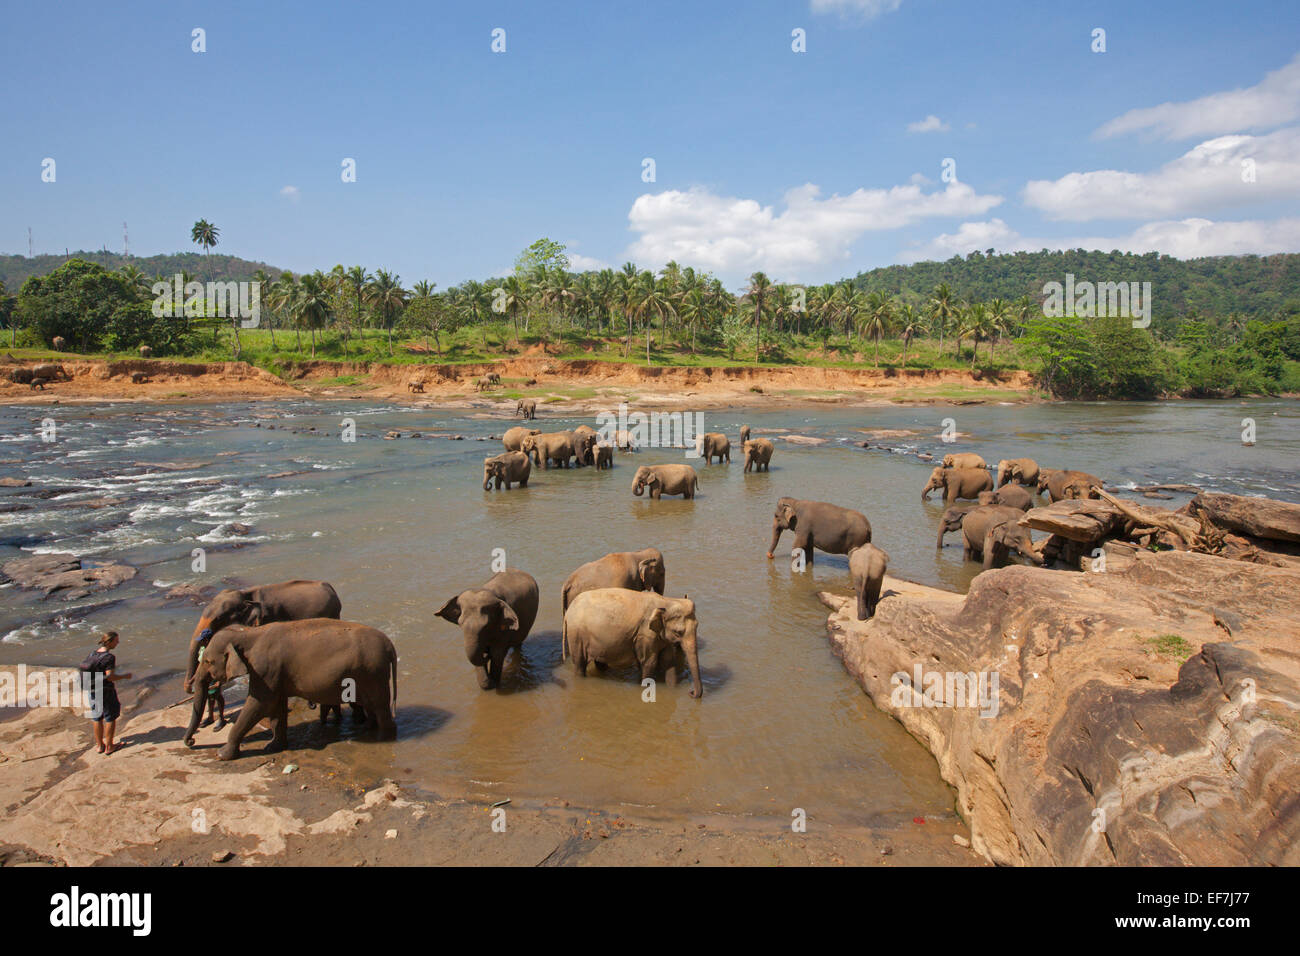 Gli elefanti bagno quotidiano nel fiume Foto Stock